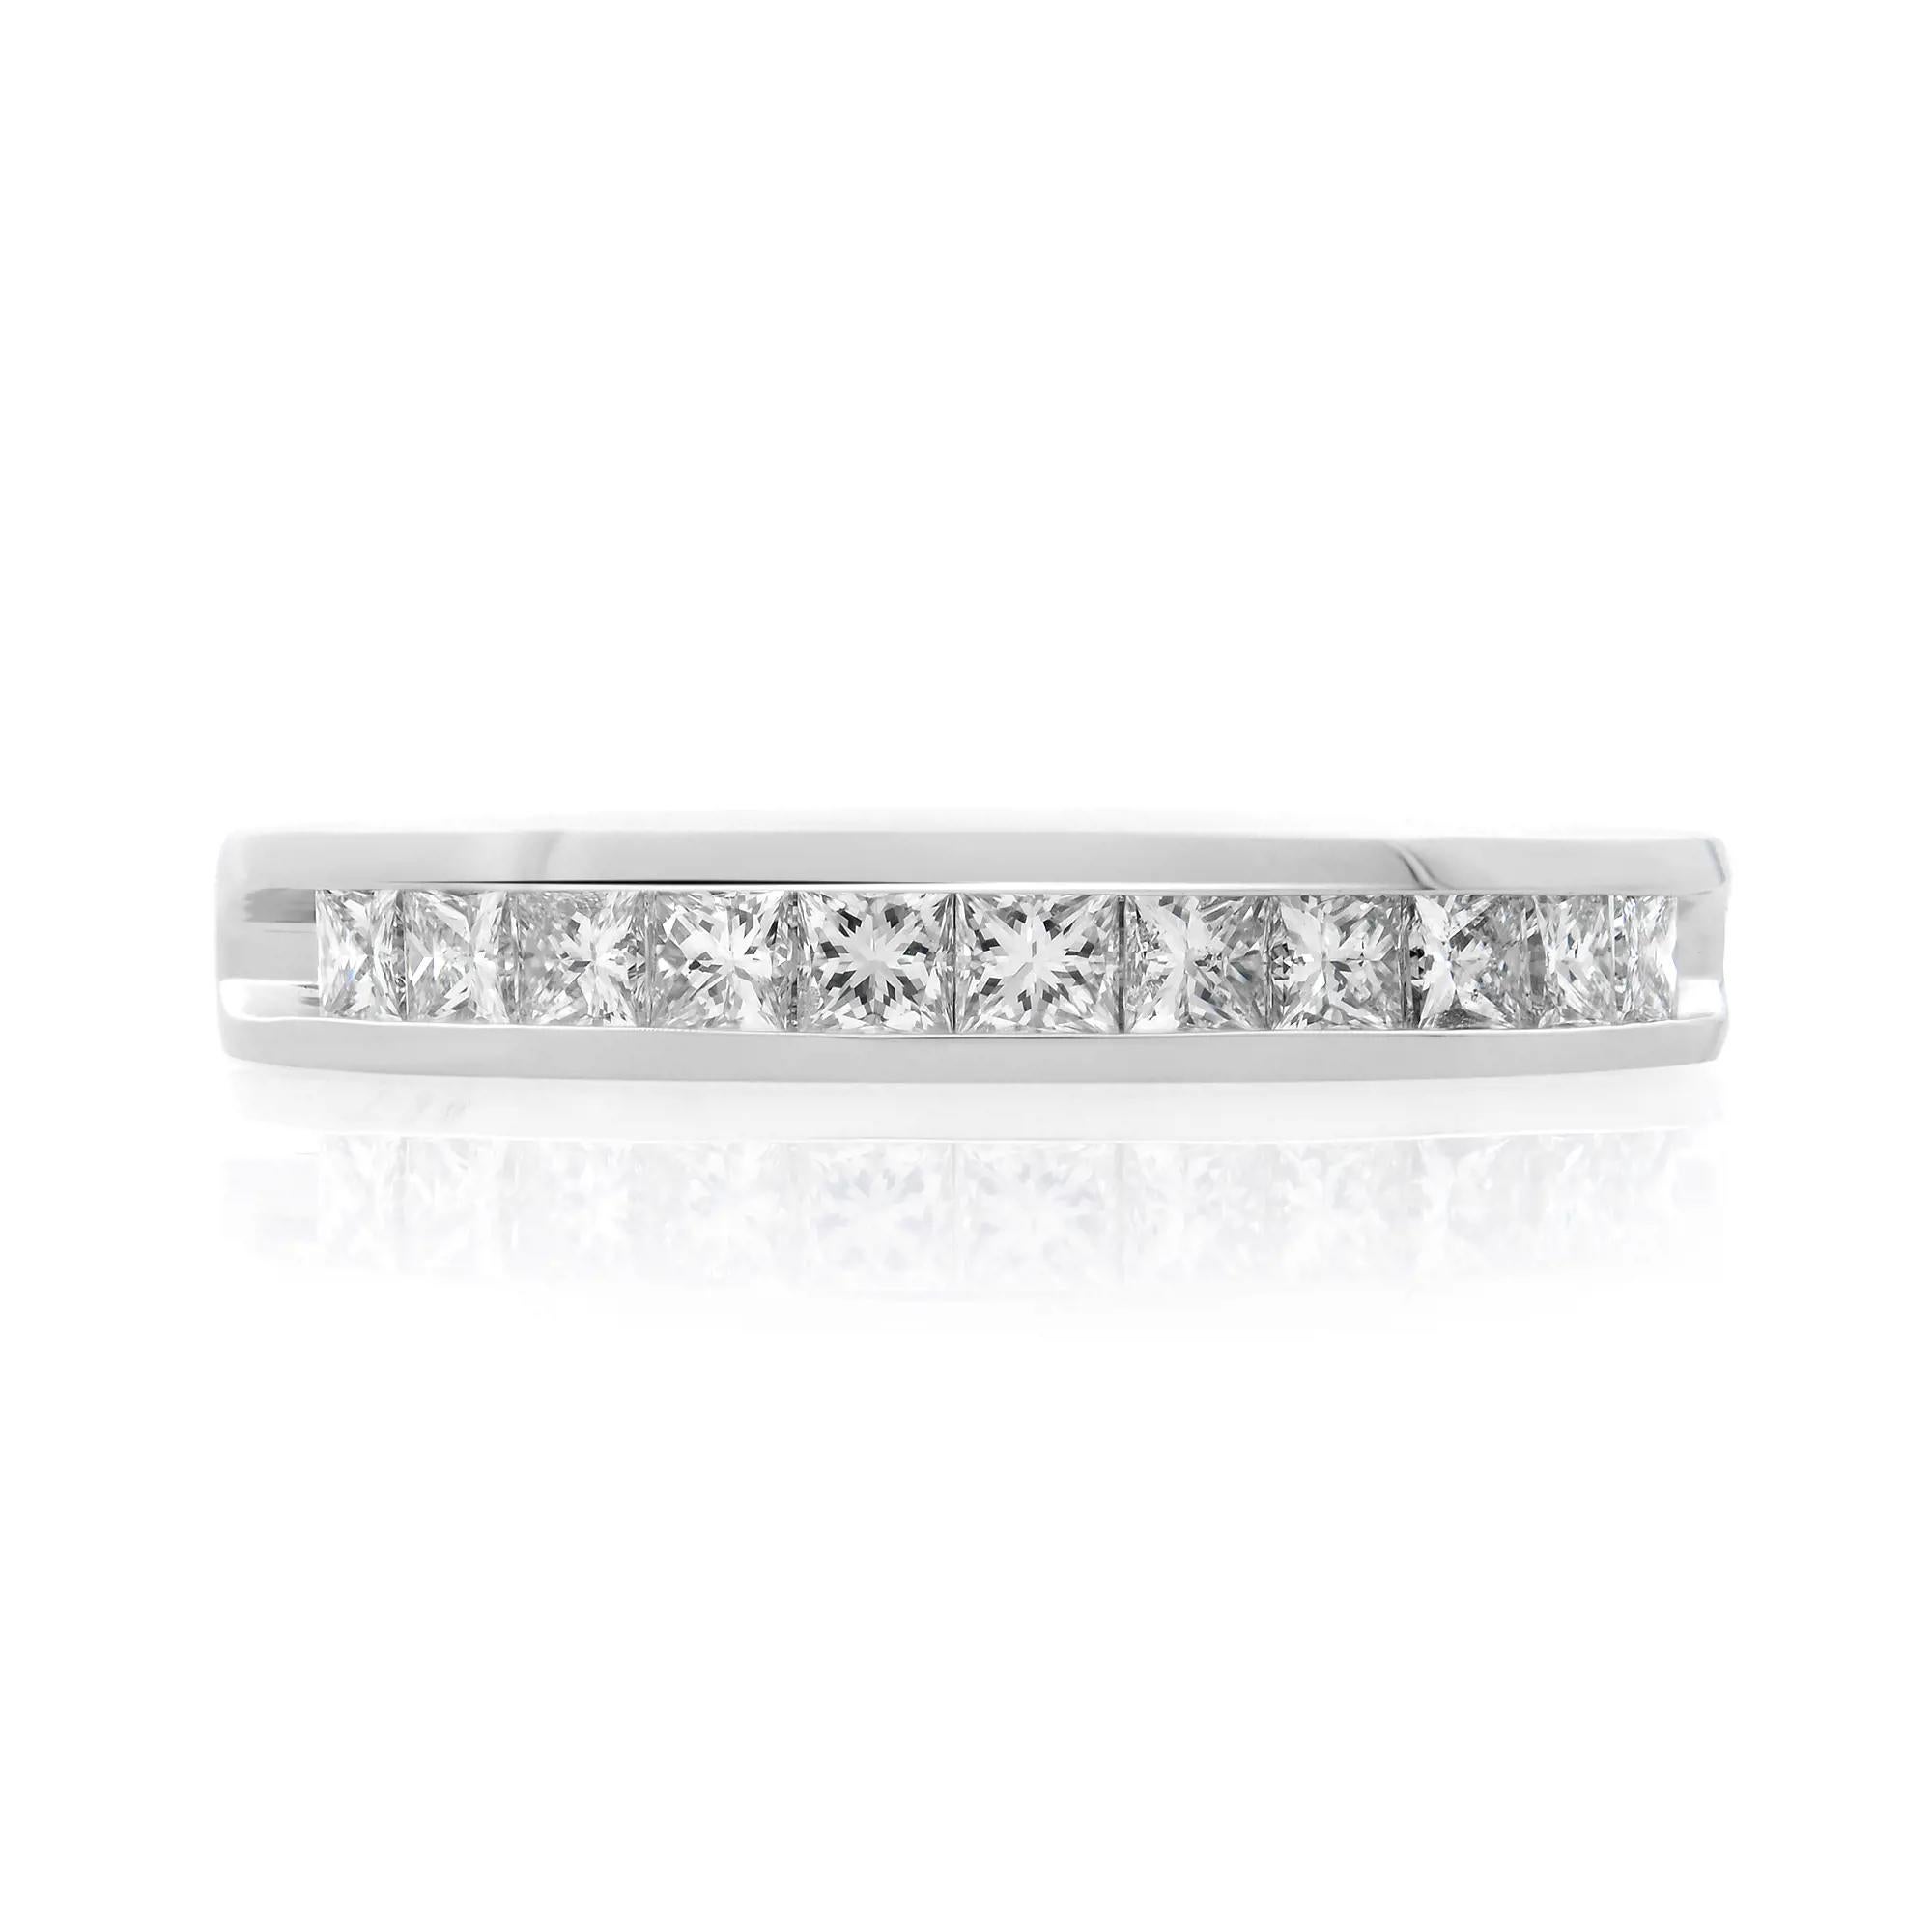 Dieser schöne und klassische Damen-Ehering ist mit 11 funkelnden Diamanten im Prinzessschliff besetzt. Alle Diamanten sind in einer massiven Platinfassung gefasst. Gesamtgewicht der Diamanten: 0,50 Karat. Diamant Farbe G-H und VS-SI Klarheit. Breite